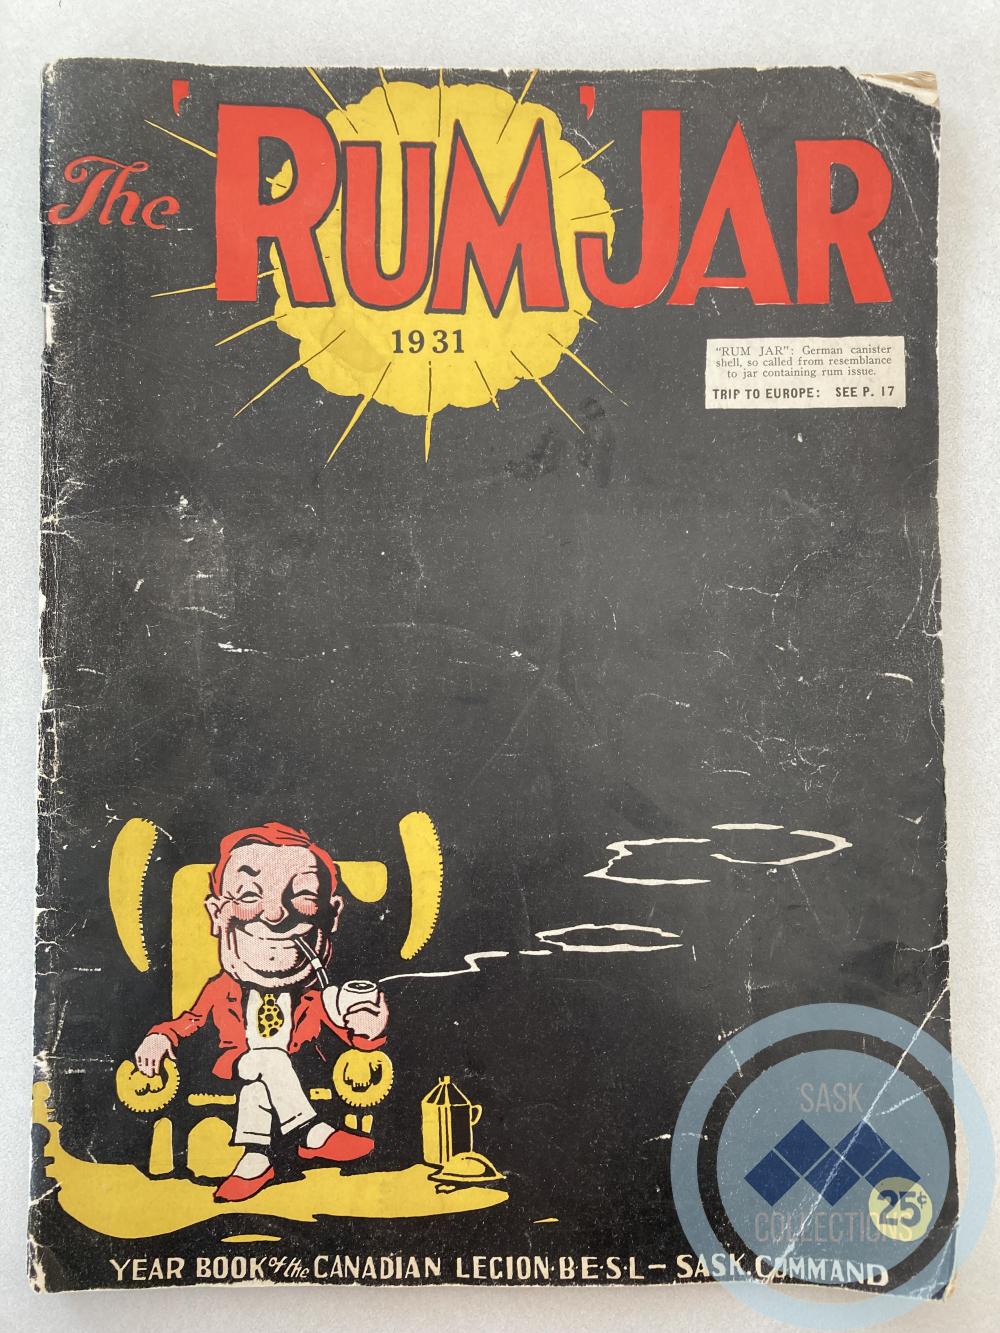 Yearbook - The Rum Jar